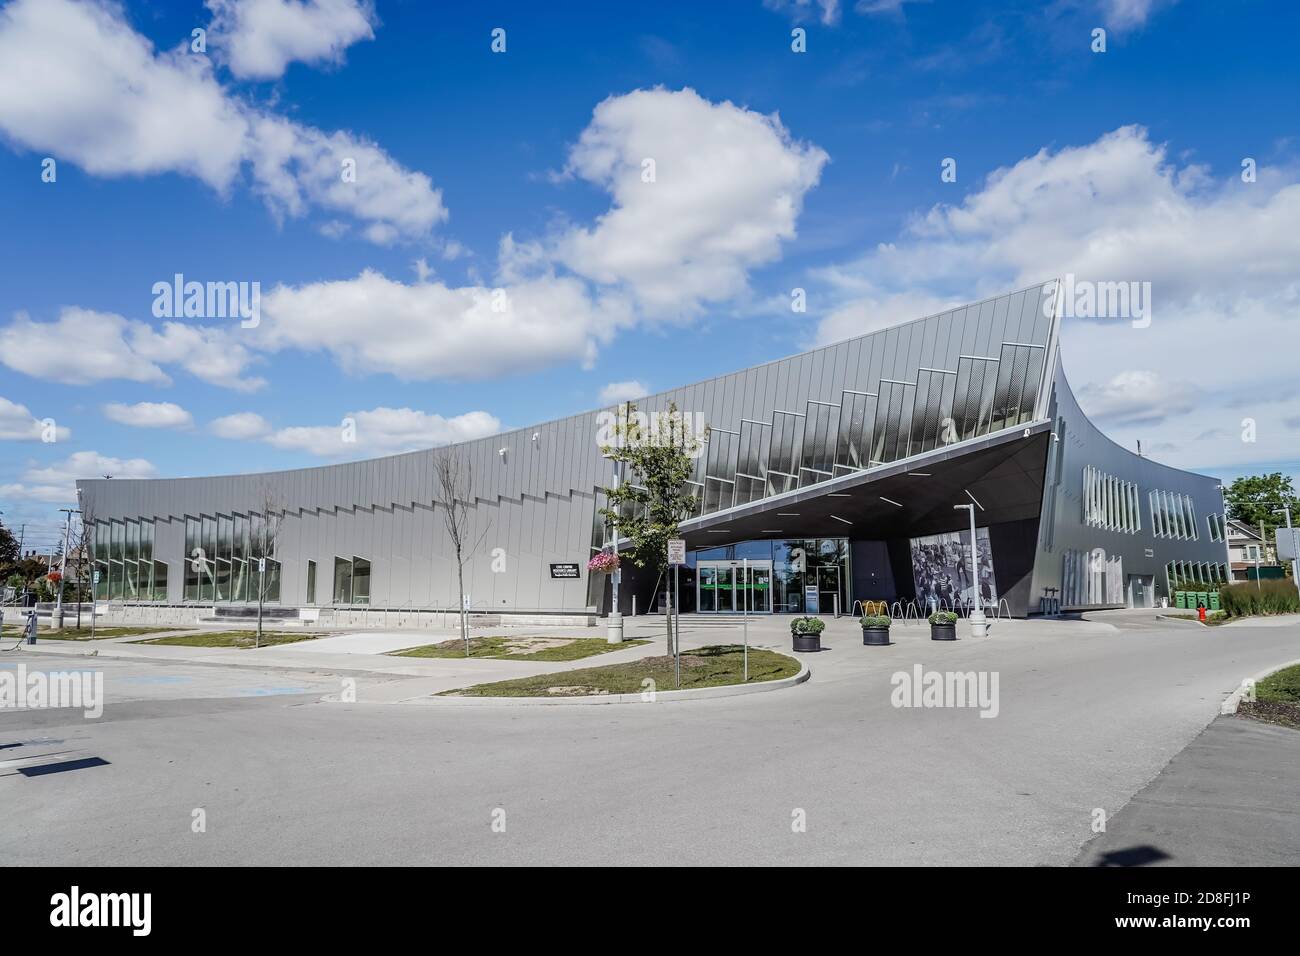 vaughan öffentliche Bibliothek Moderne Architektur in der Nähe von toronto kanada blauen Himmel Sonniger Nachmittag Stockfoto